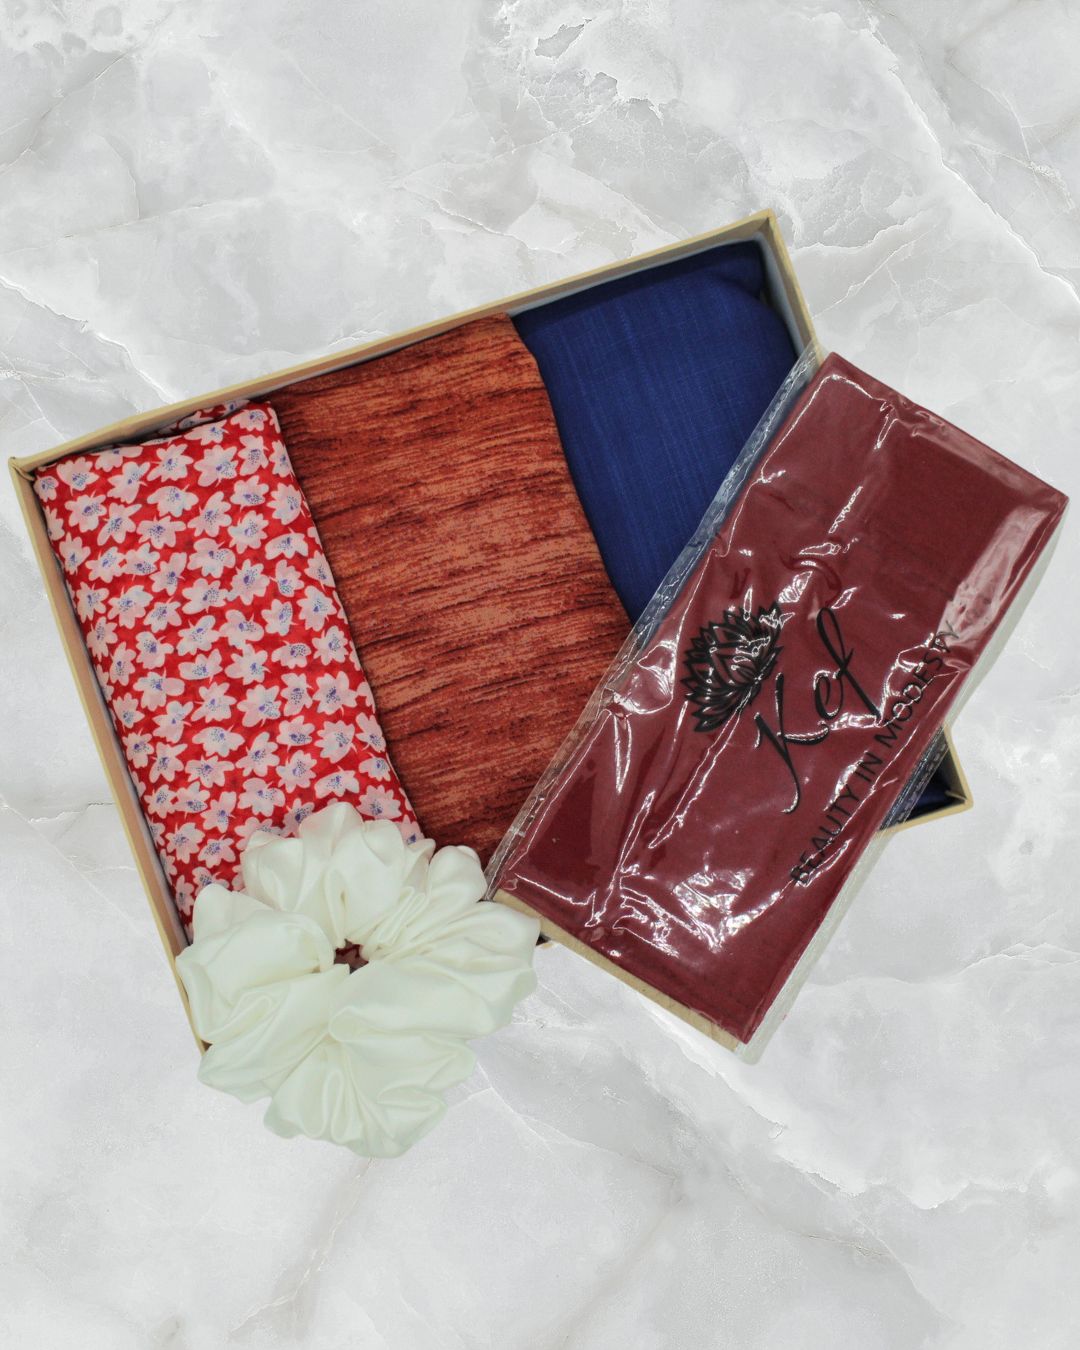 Hijab Gift Box - Royal Crescent